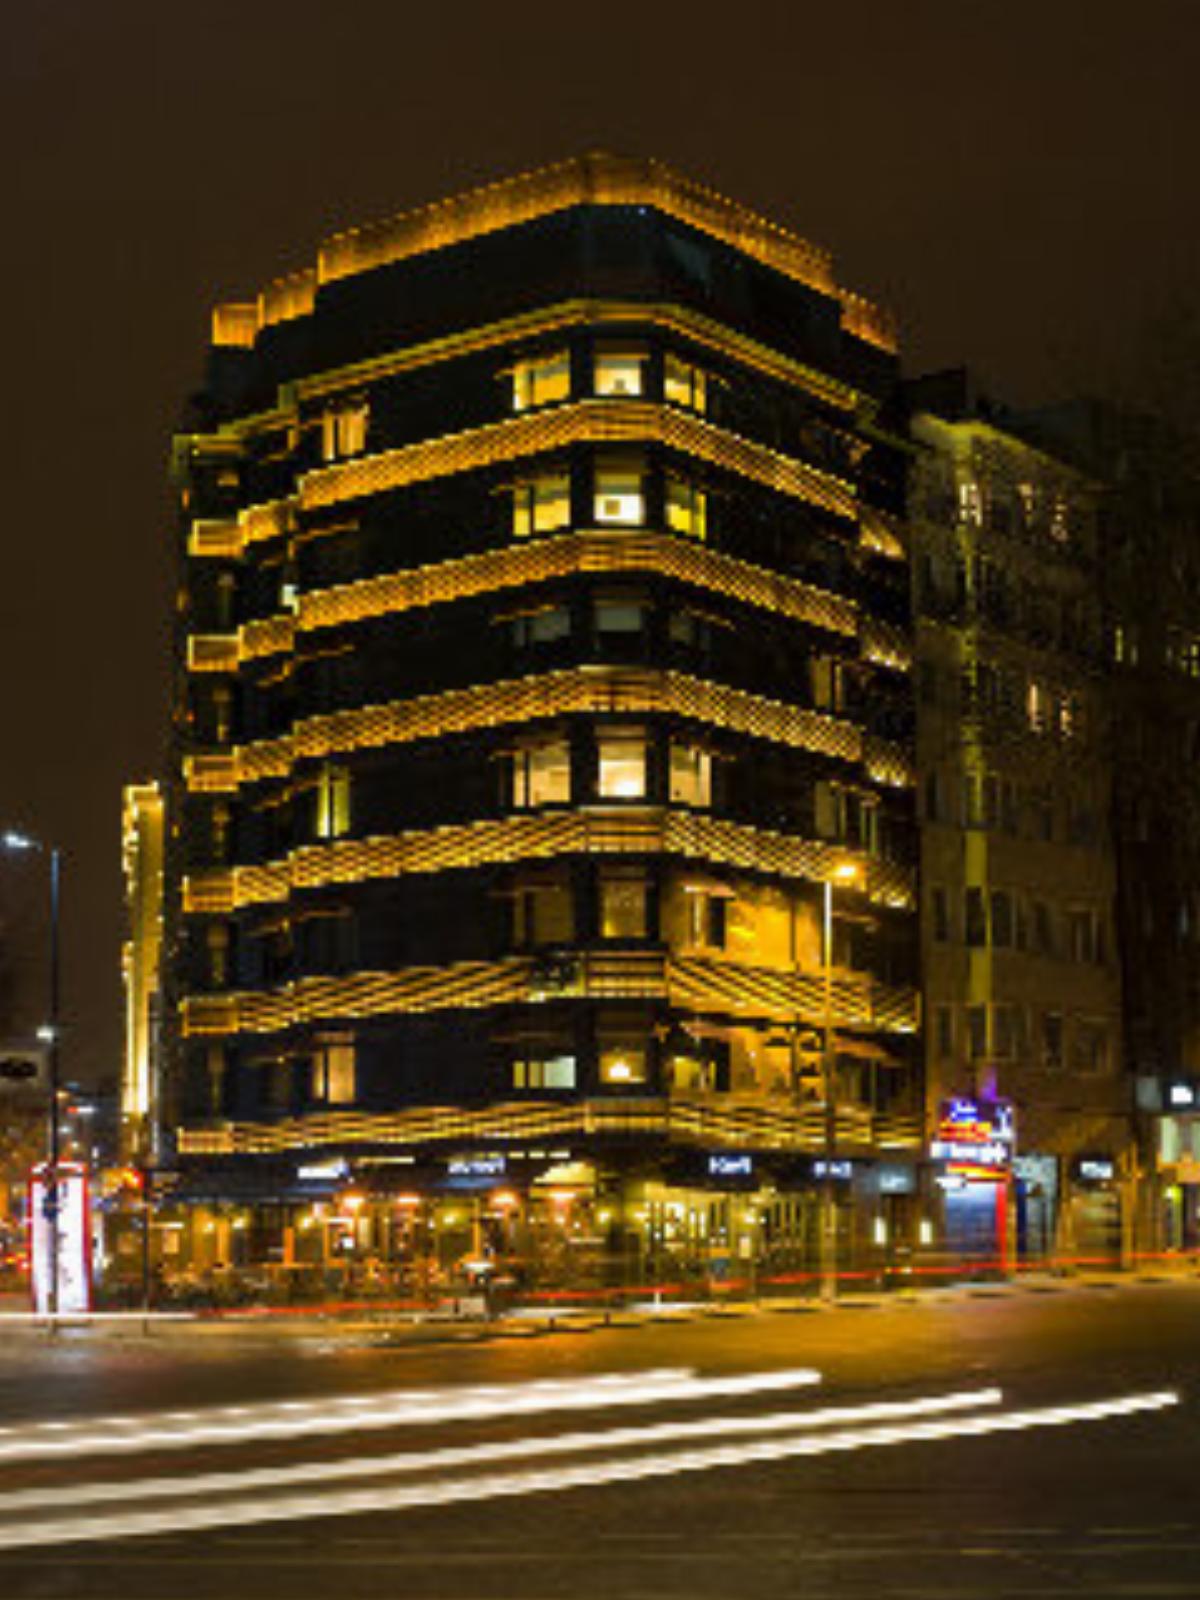 Divan Taxim Suites Hotel Istanbul Turkey